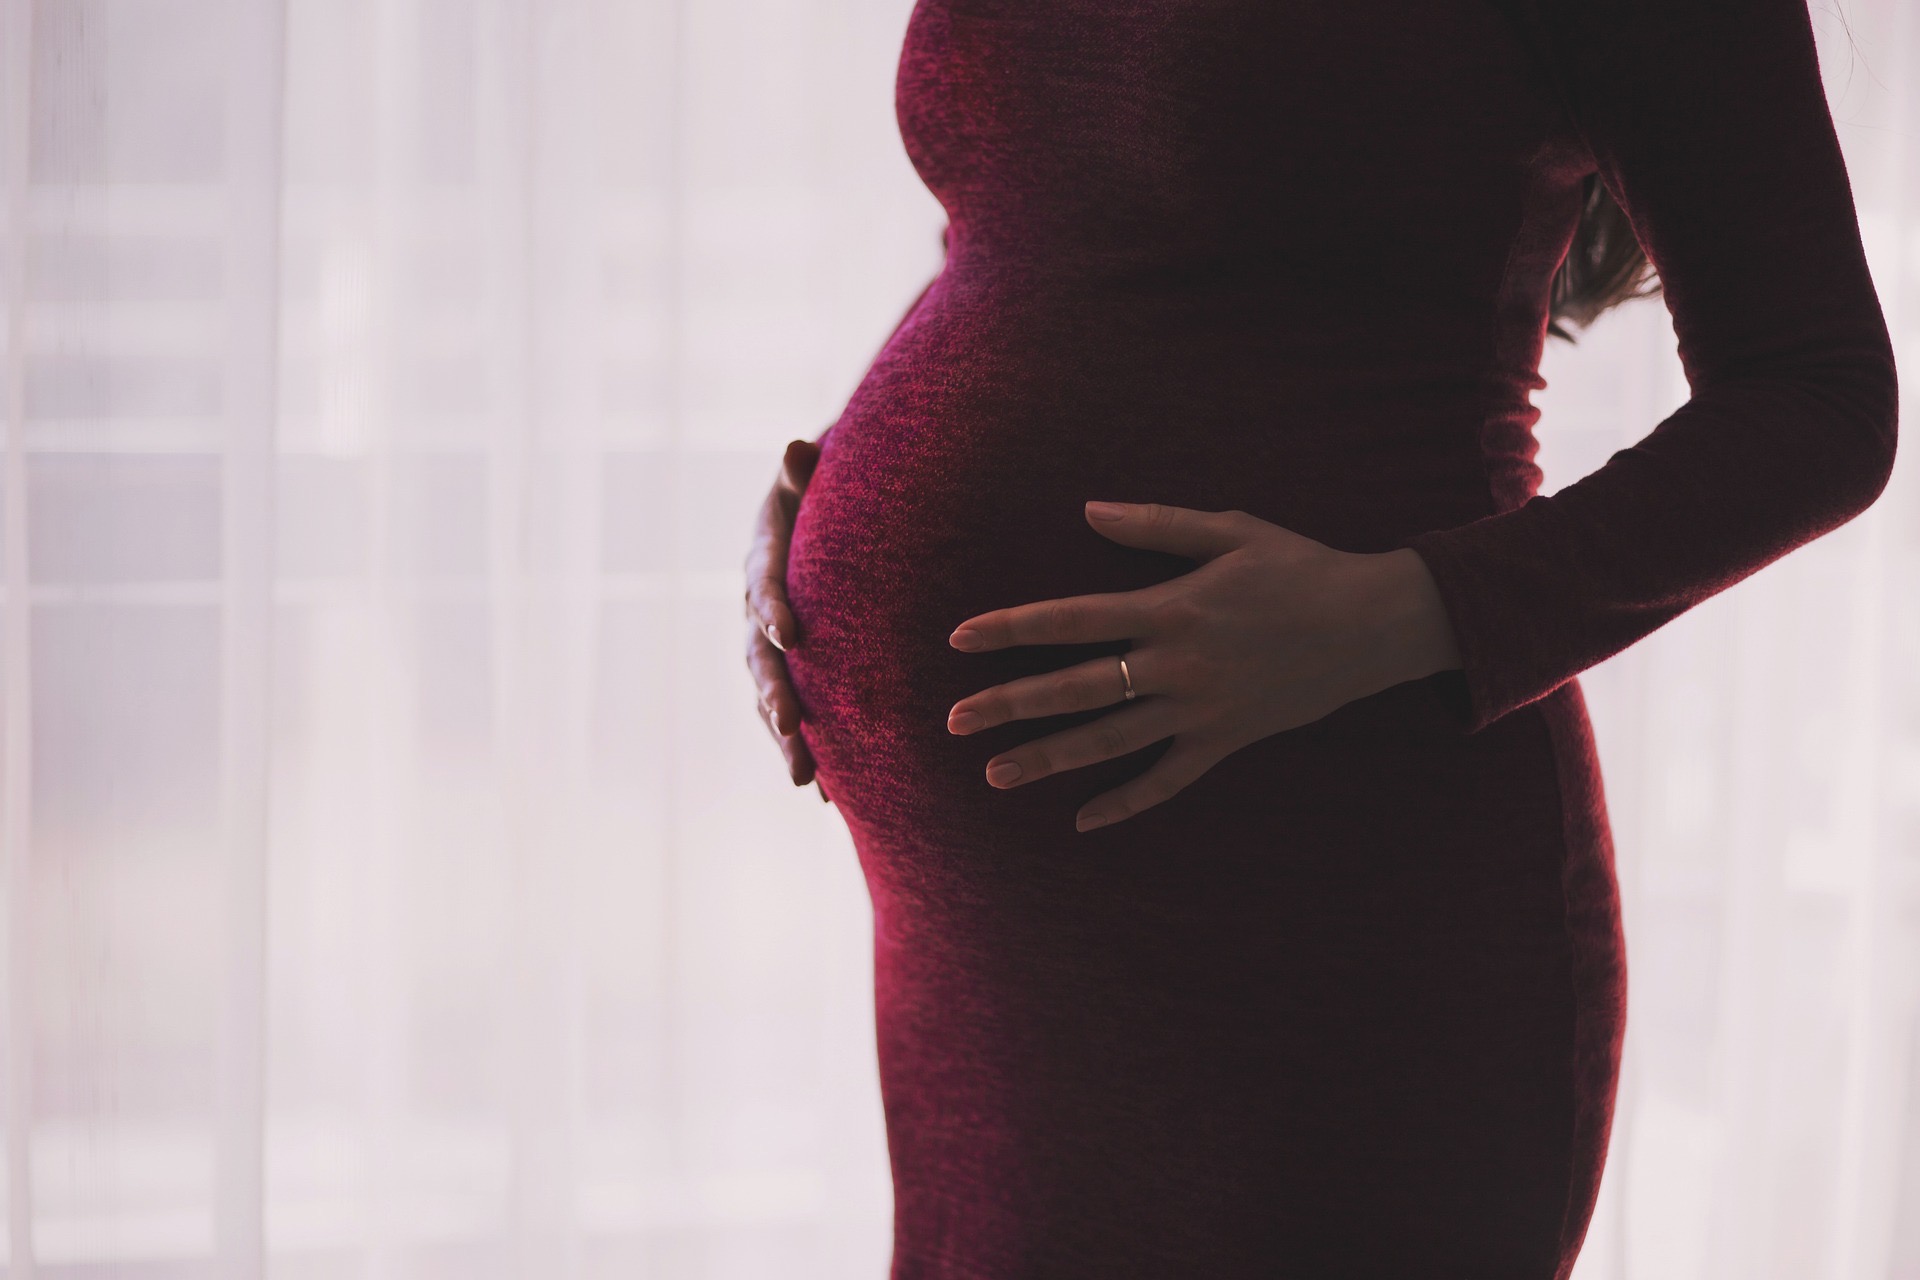 "An der Form das Bauches kann man das Geschlecht des Babys erkennen", diese und weitere Mythen kursieren um das Thema Schwangerschaft. Ist was dran?